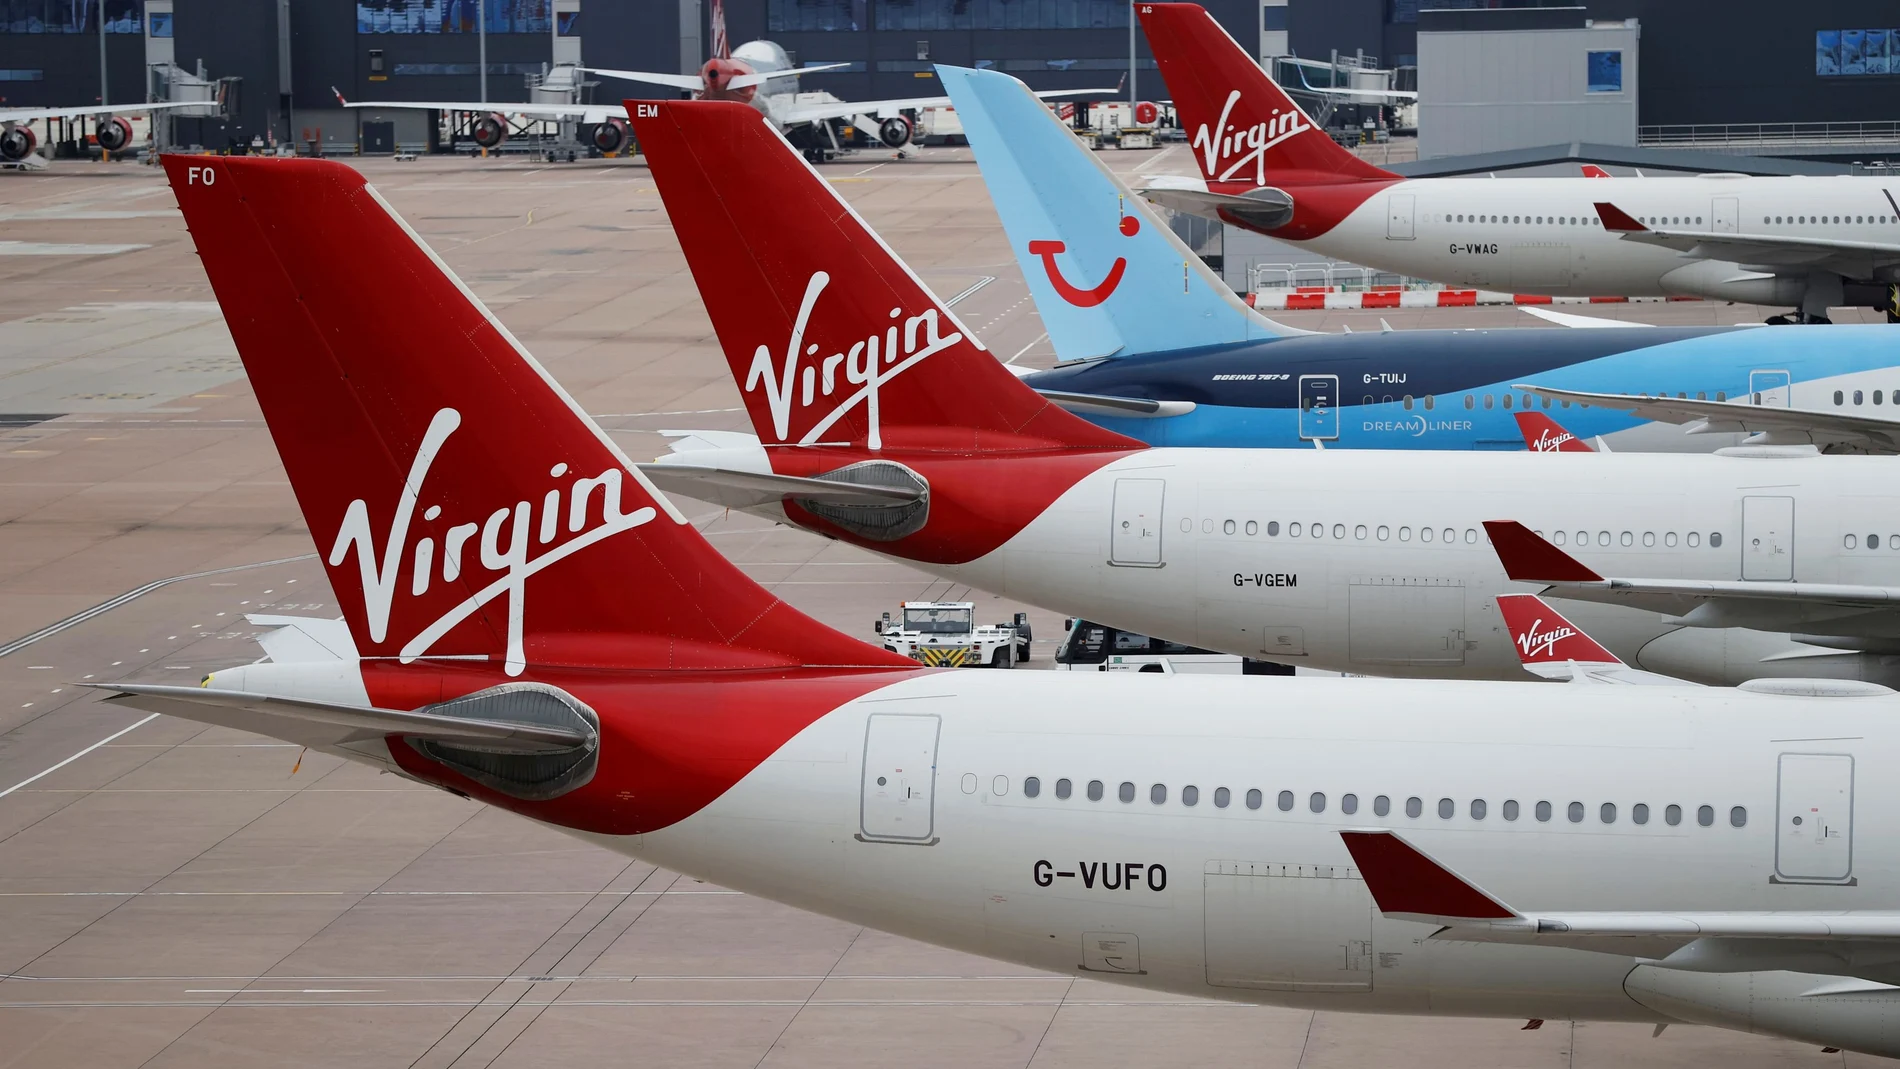 Rachel Street, una gerente de un bar de 41 años, tuvo que ser esposada en el avión de Virgin Airways el pasado 5 de enero